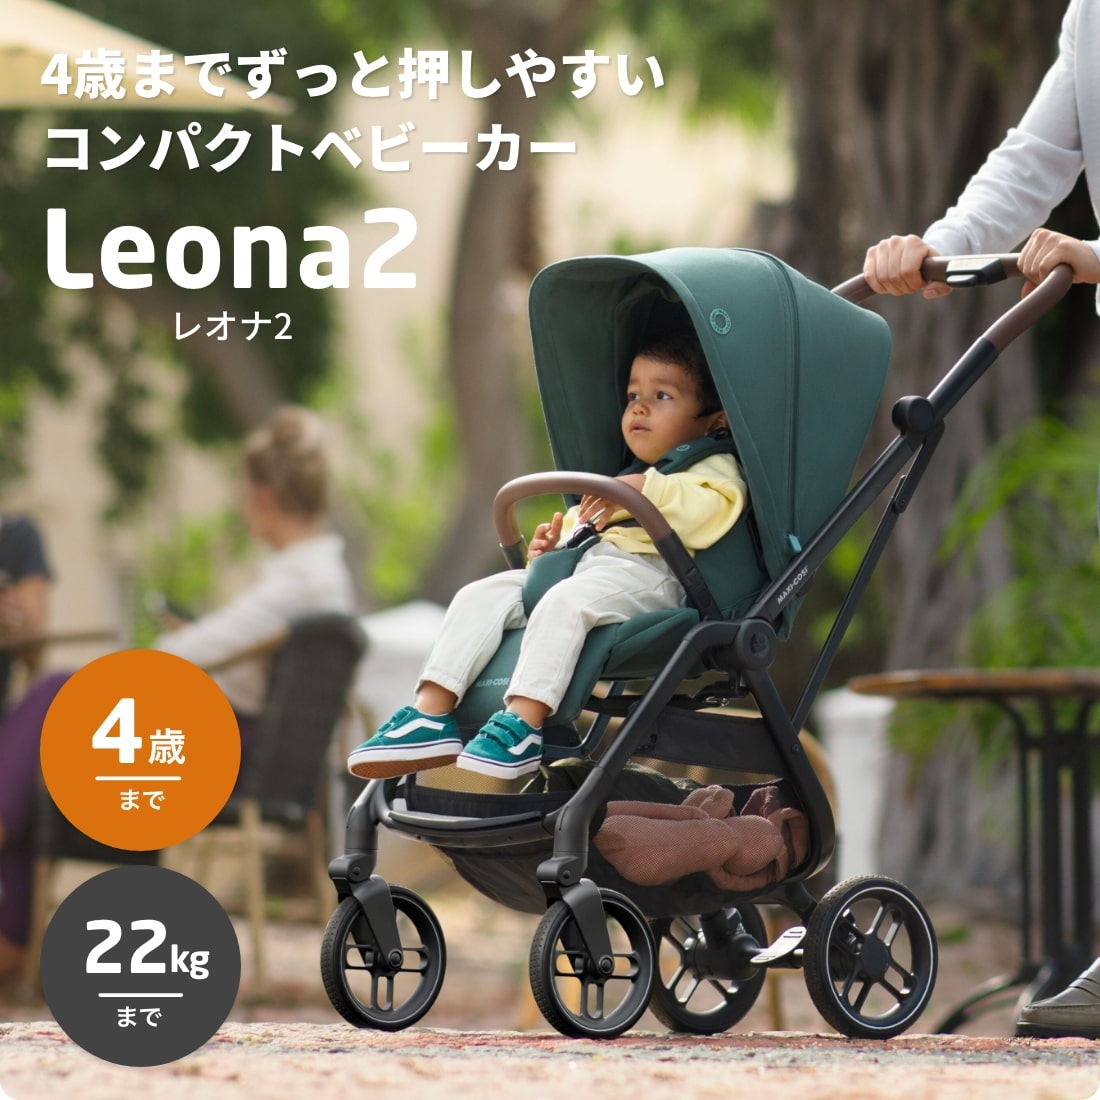 マキシコシ レオナ2 ベビーカー トラベルシステム 両対面 コンパクト ストローラー 新生児 LEONA maxicosi